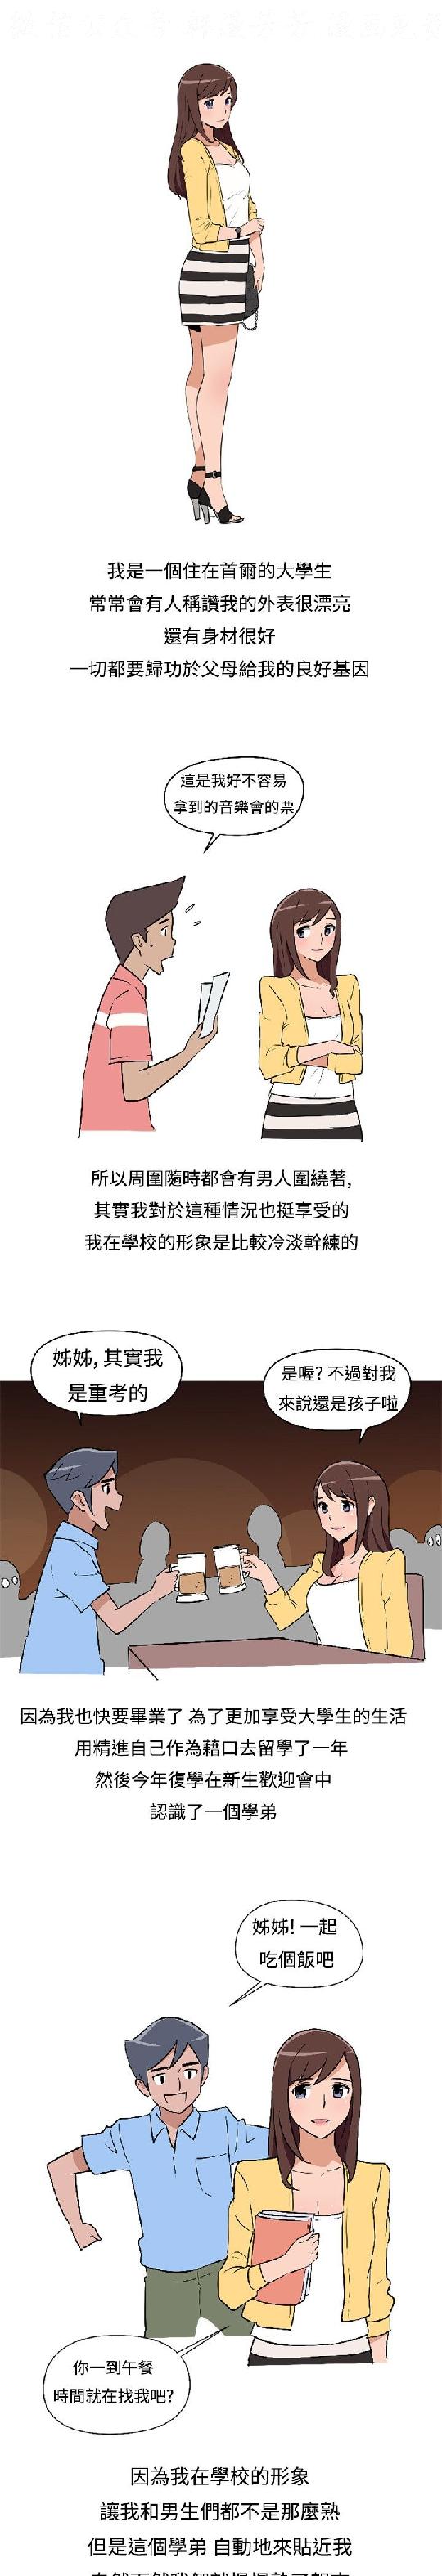 調教女大生【中文】 page 1 full